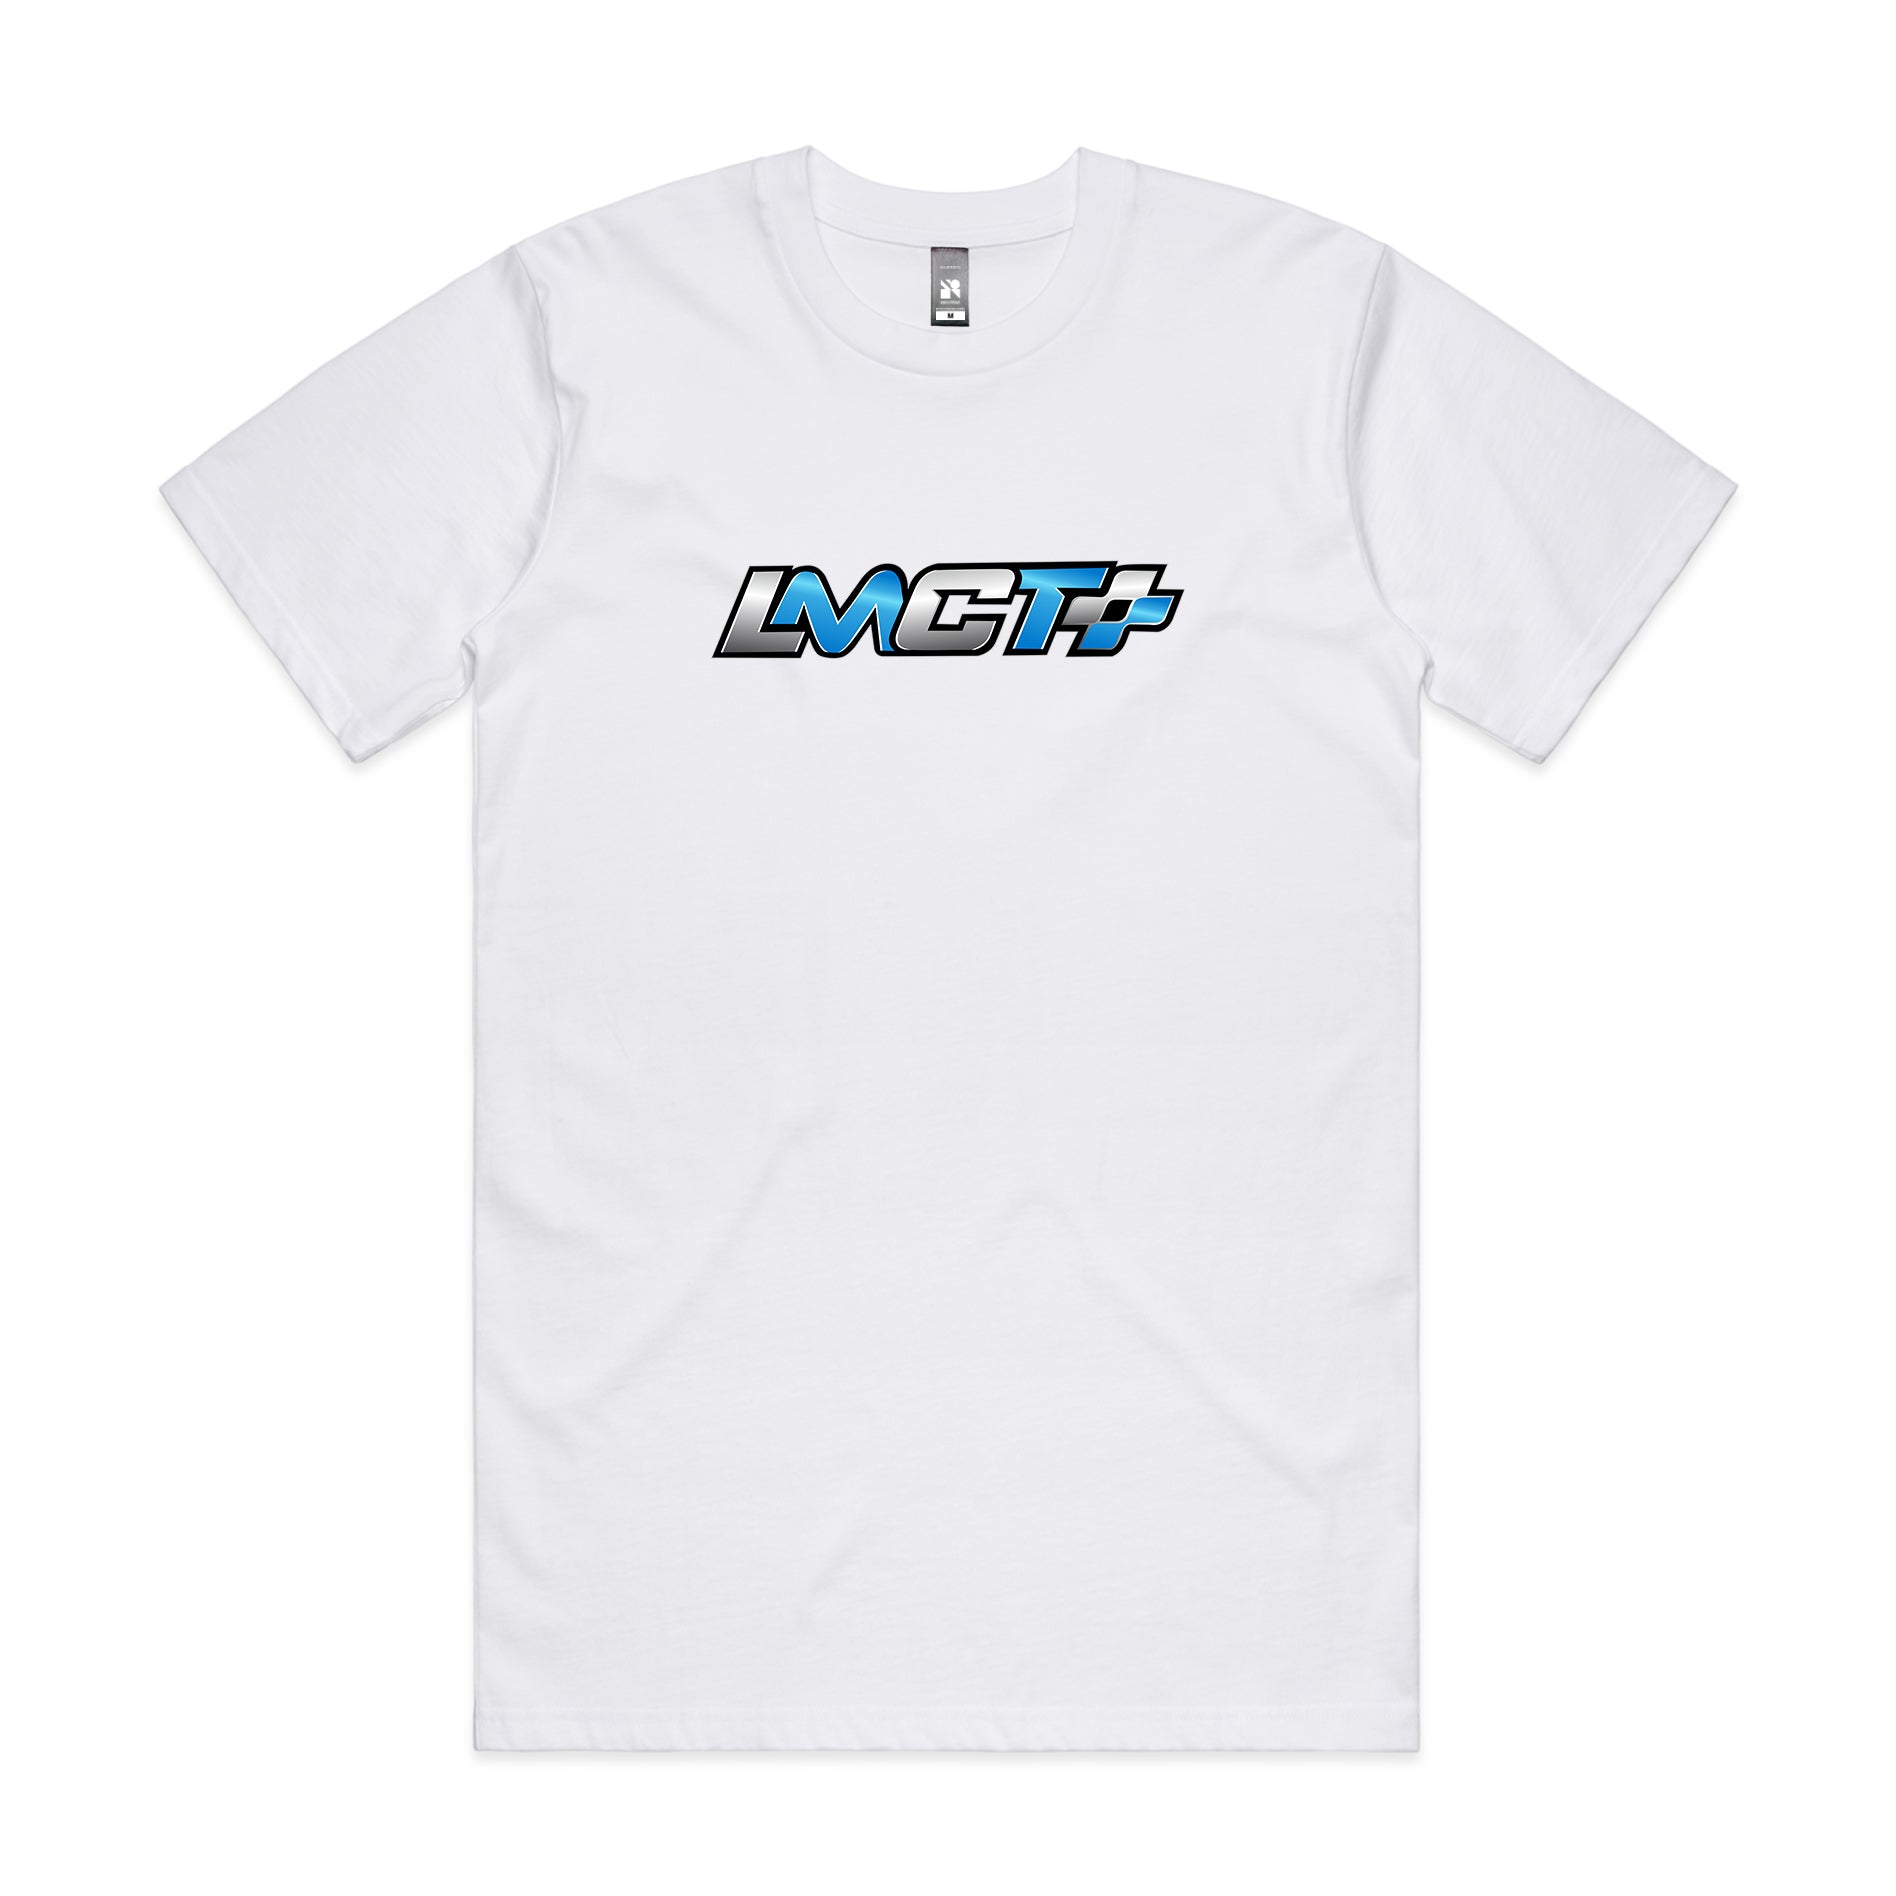 LMCT+ OG White T-Shirt